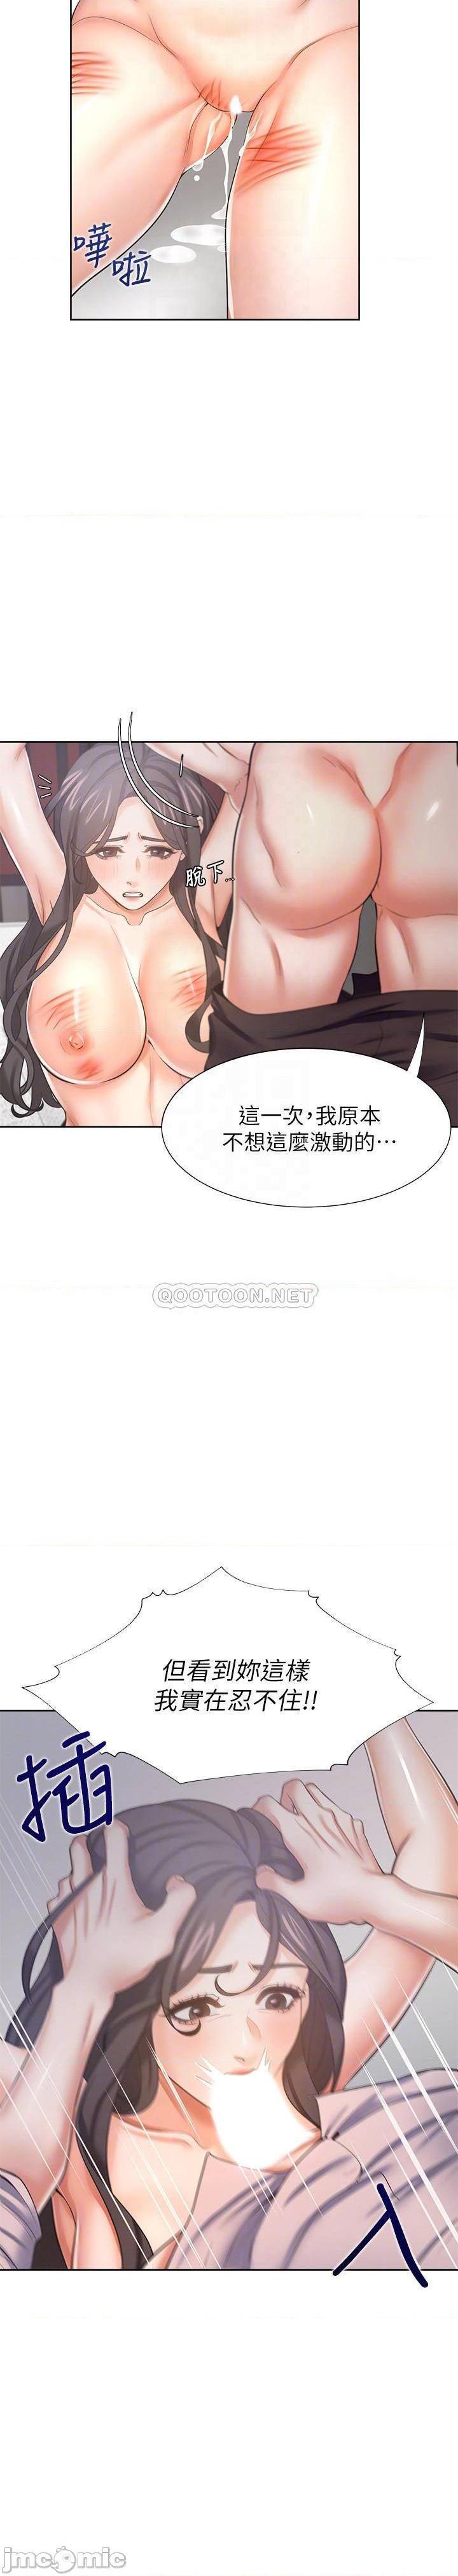 《渴望:爱火难耐》漫画 第43话 - 乖乖听主人的话